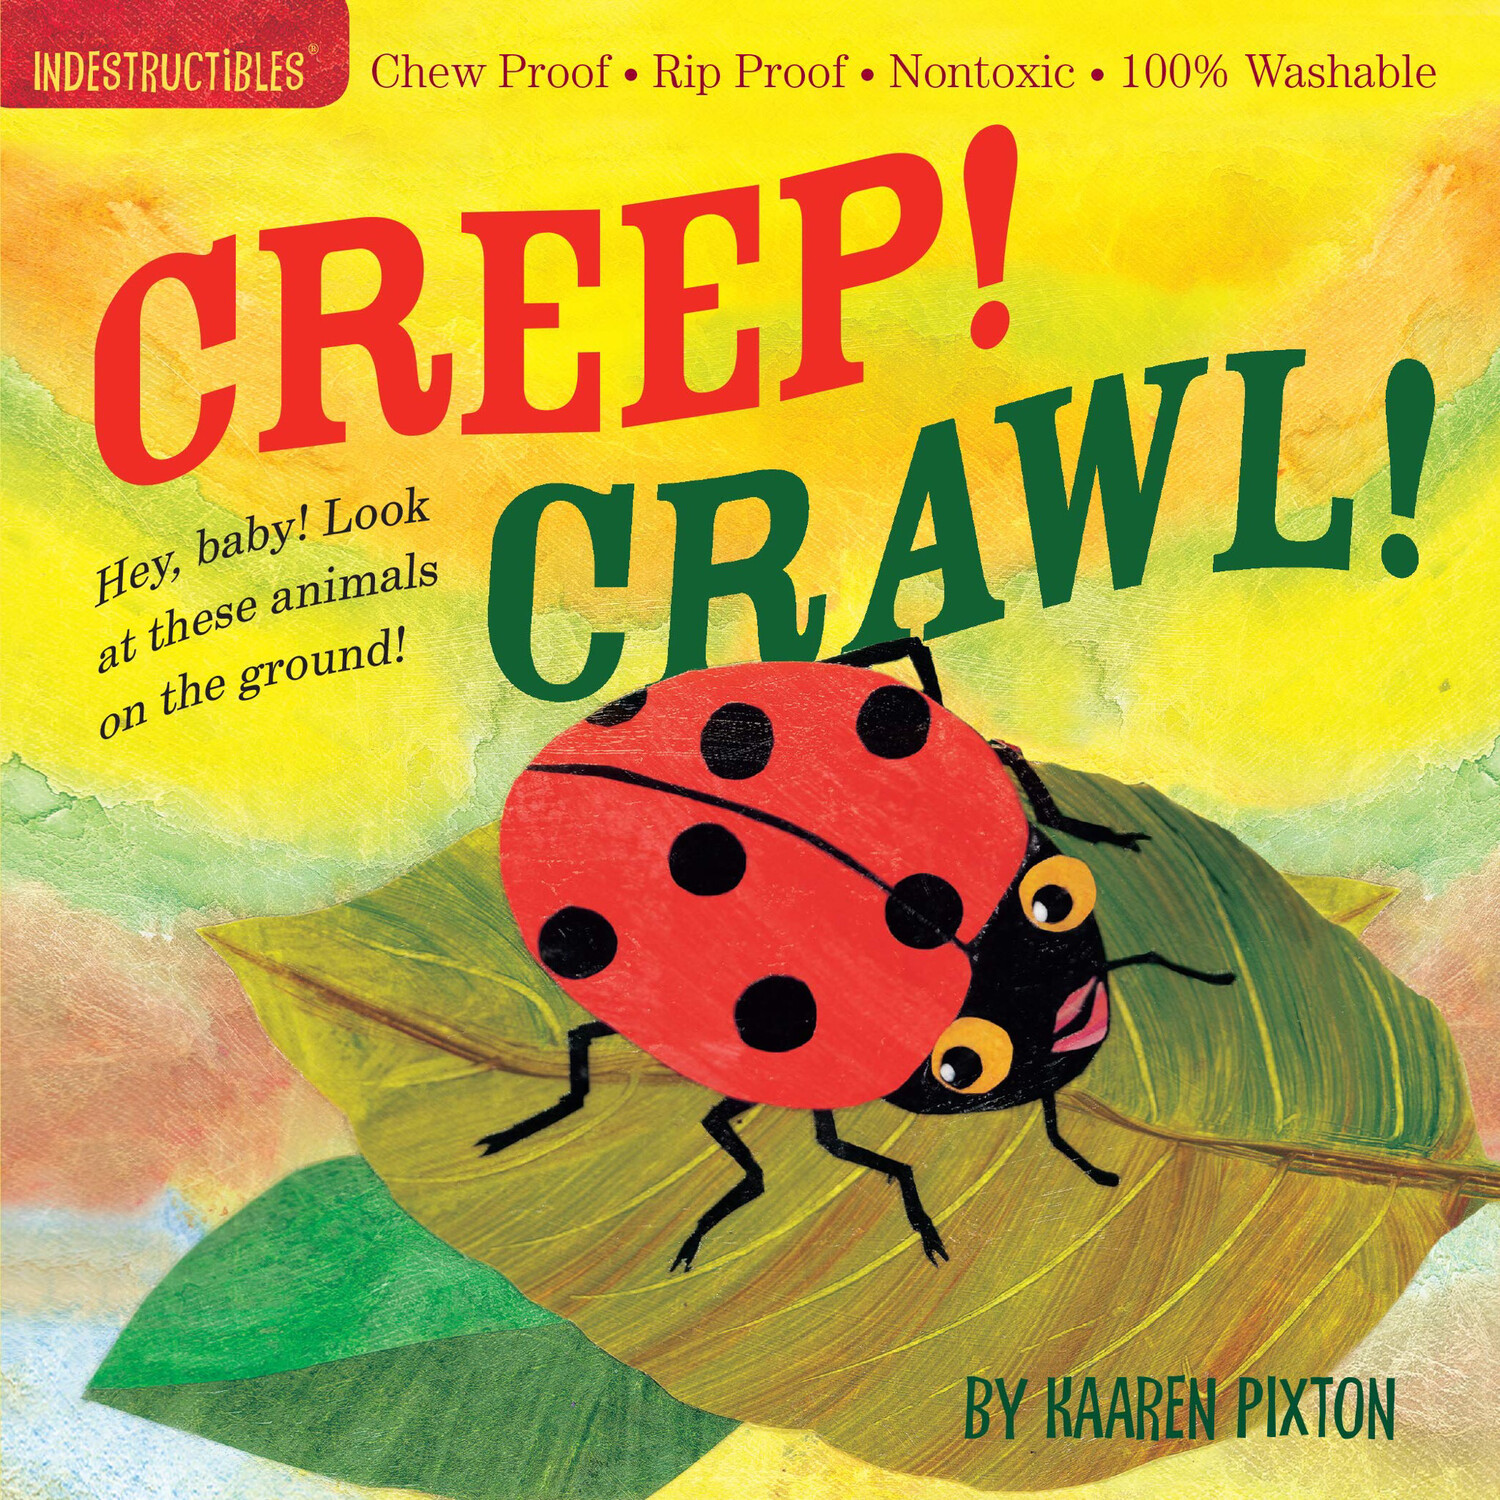 Indestructibles “Creep! Crawl!” Book